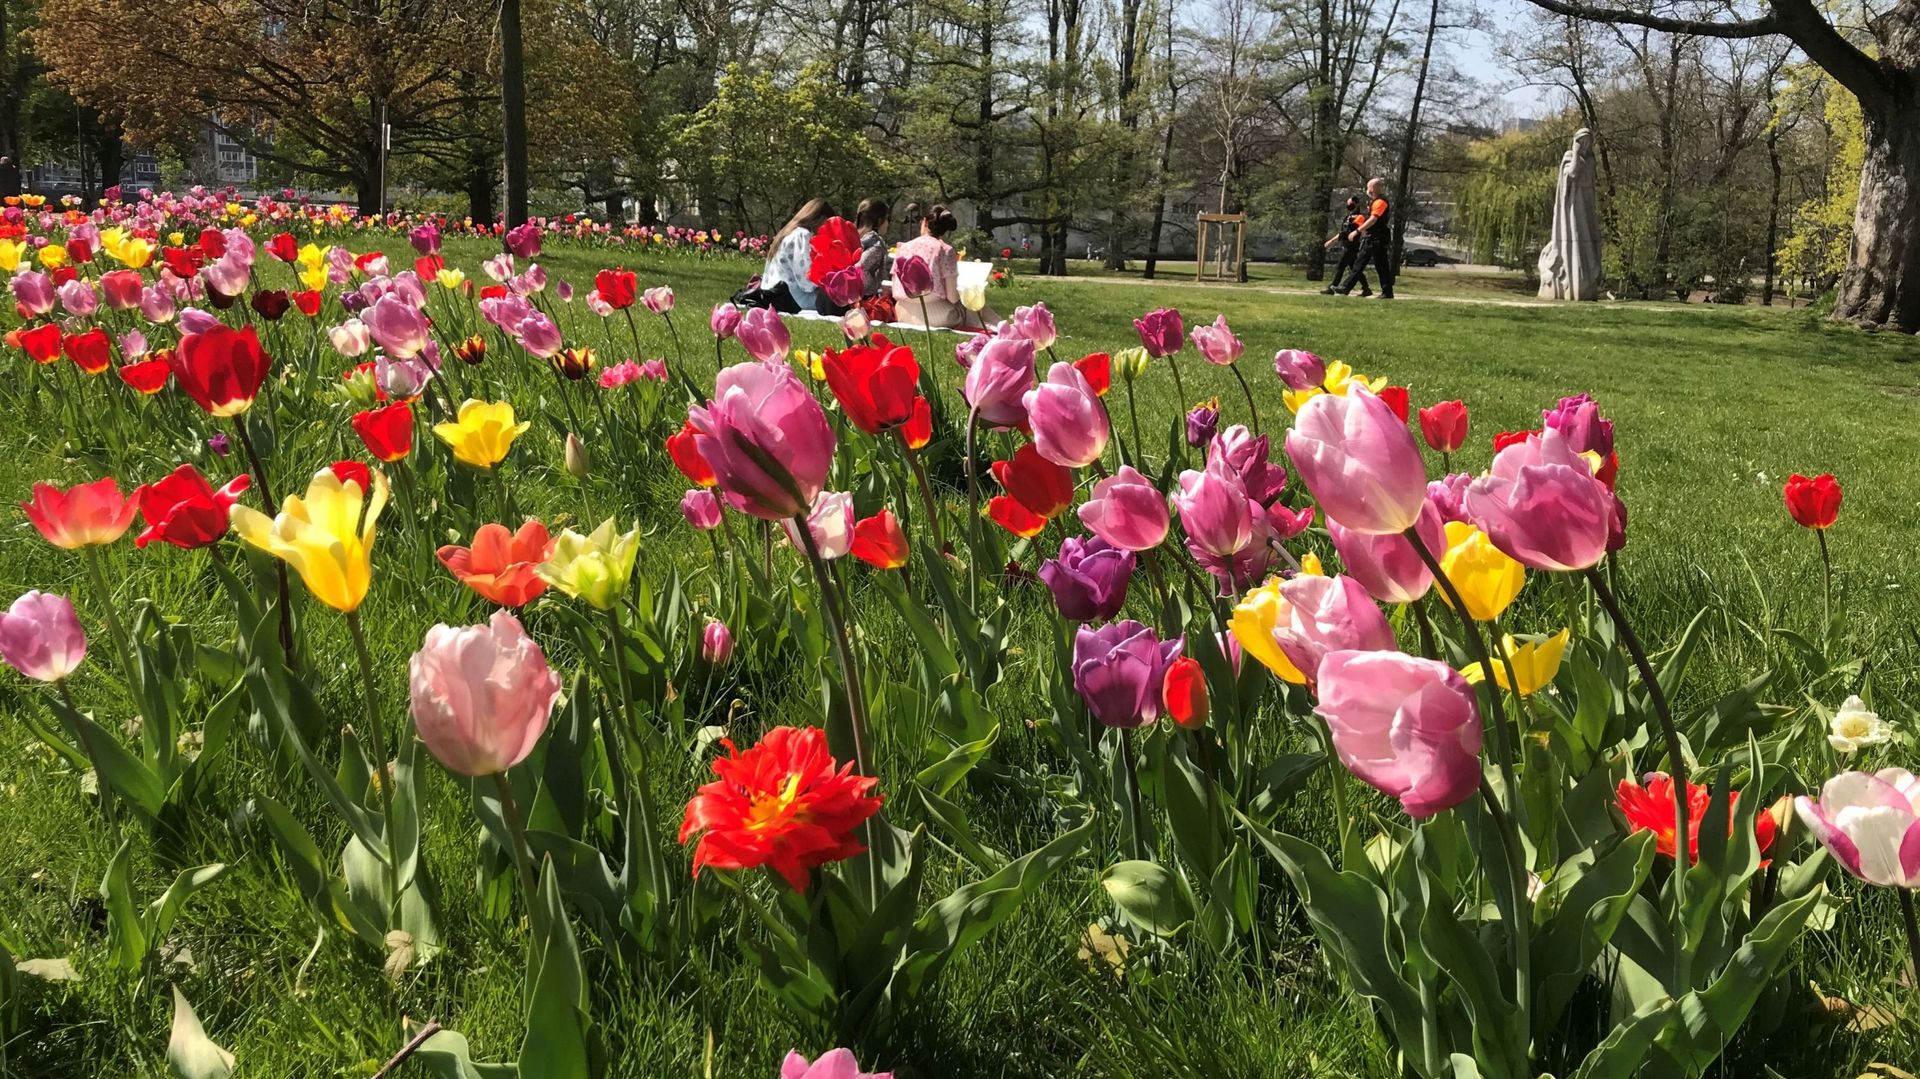 Les tulipes sont en pleine floraison dans le parc de la Boverie à Liège